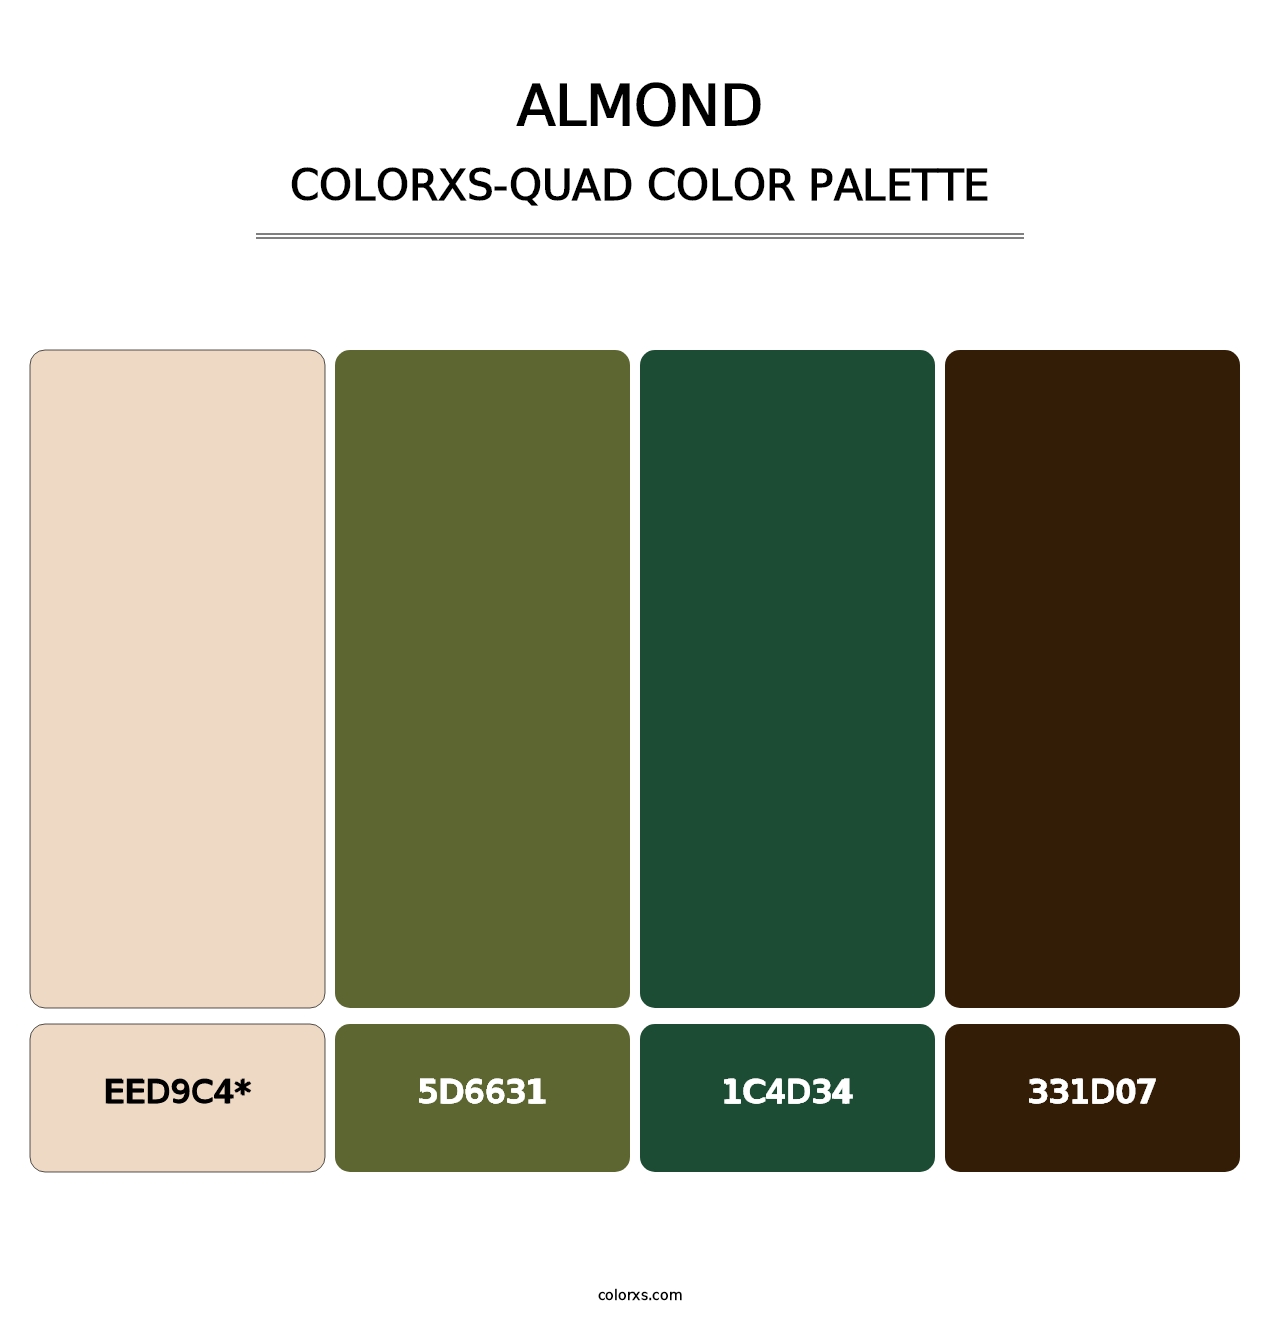 Almond - Colorxs Quad Palette